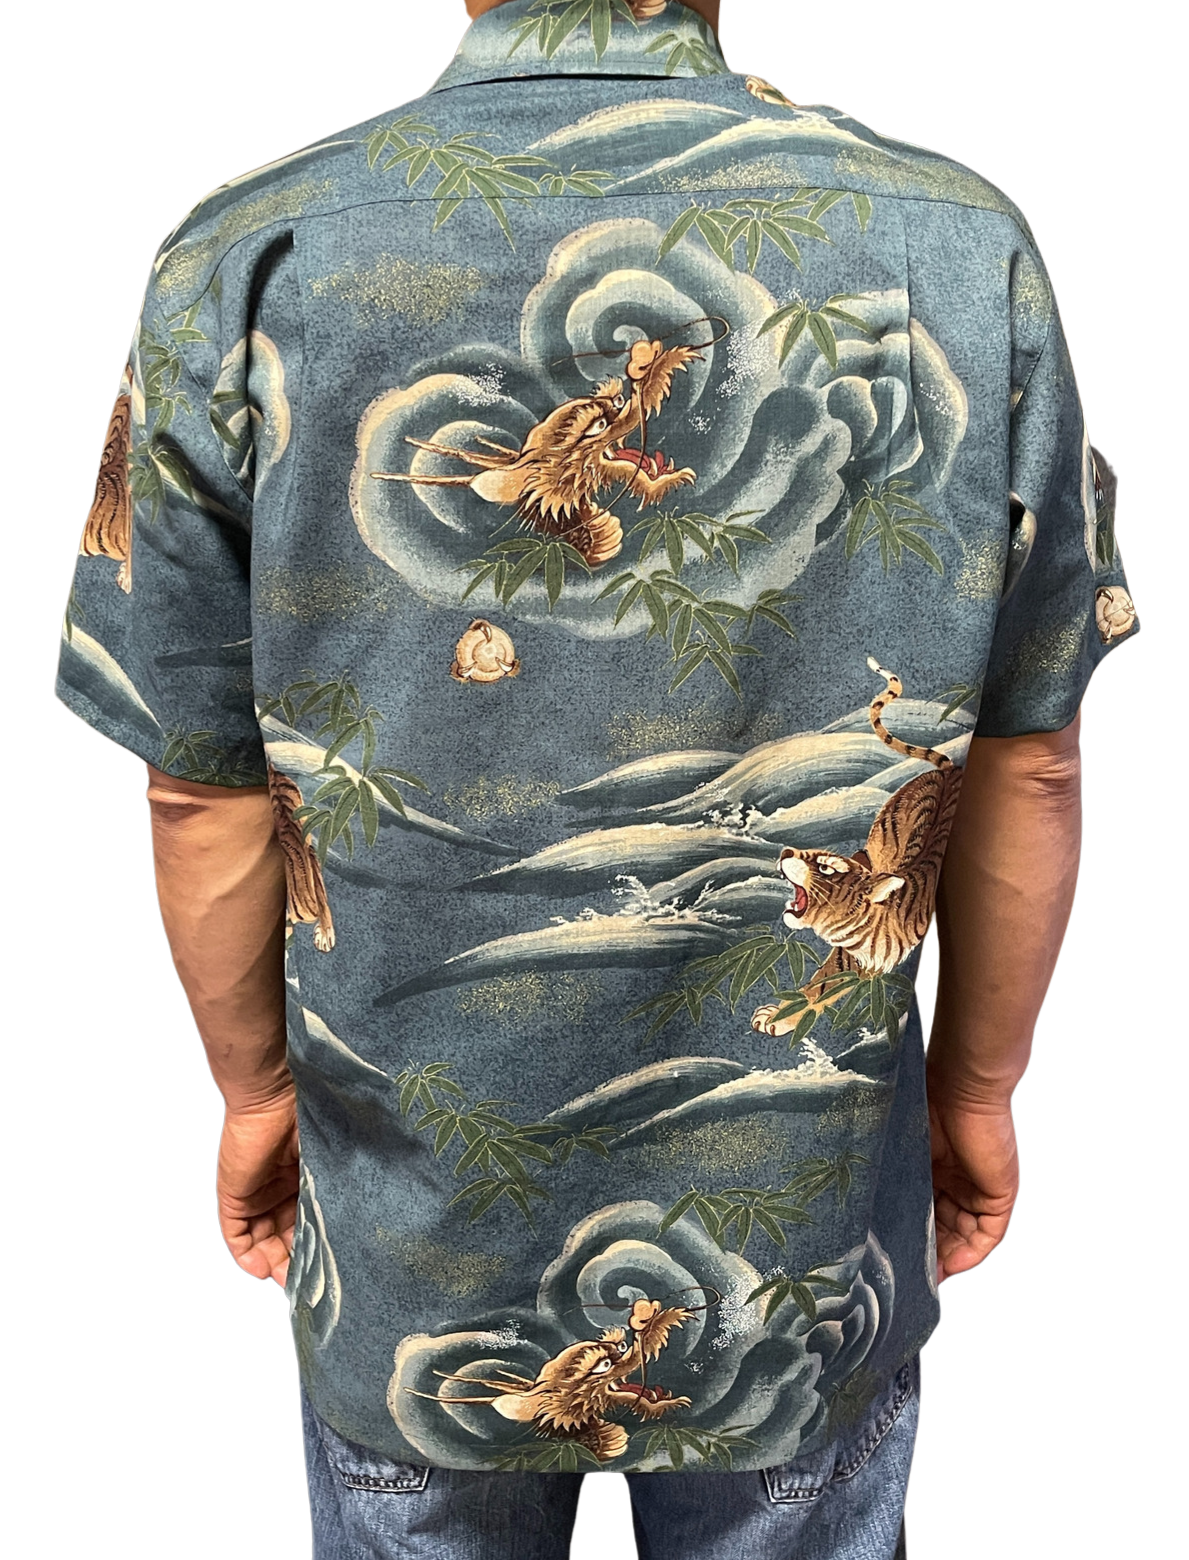 Beliebtes Muster! Ein stilvoller Aloha mit einem Symbol für ein Glück und ein Muster eines Drachen, eines alten Schutzengottes